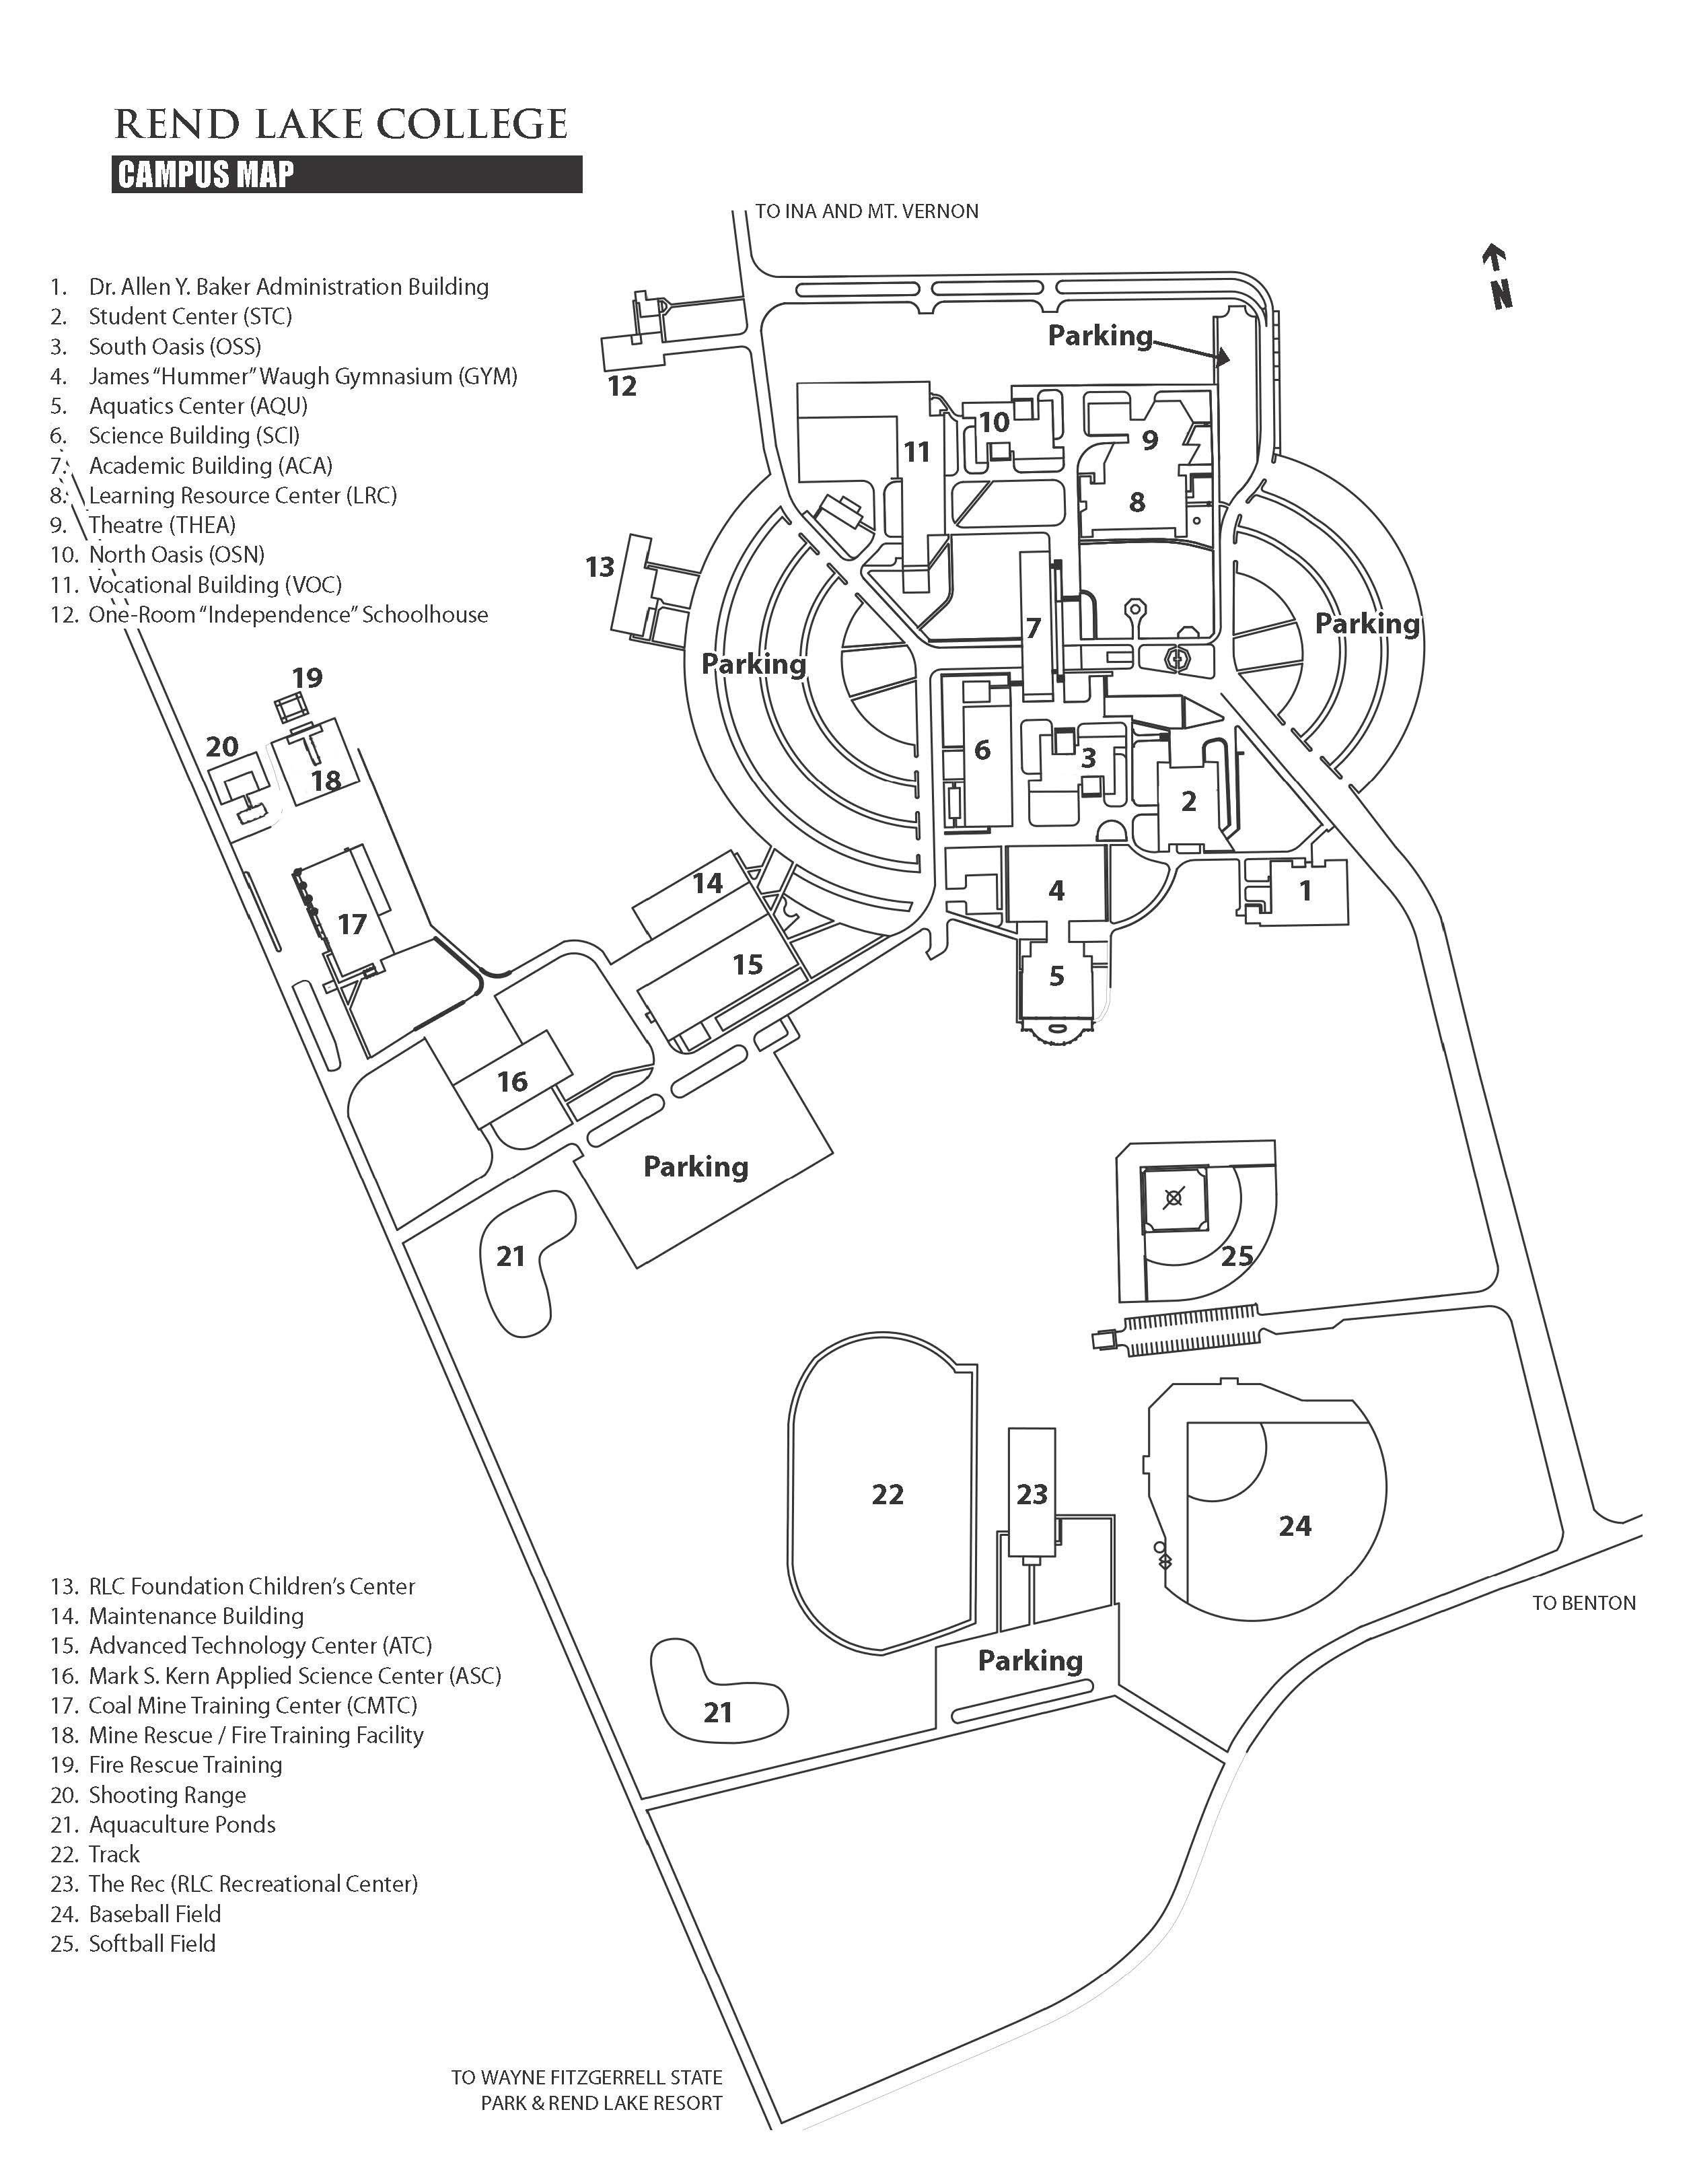 American Lake Va Campus Map 